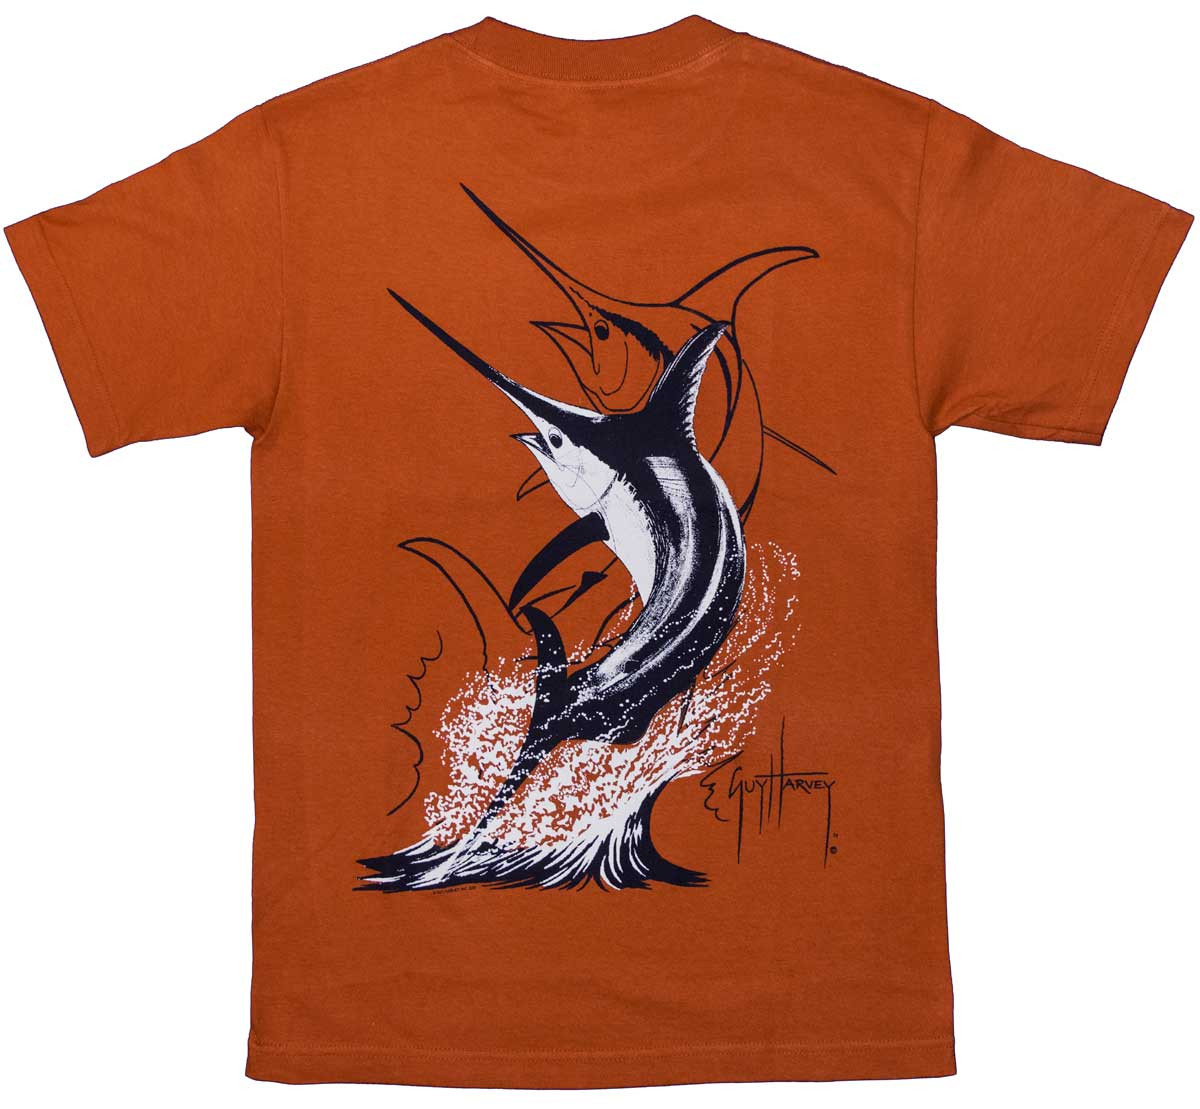 Guy Harvey Swordfish Strike Men's Back-Print Tee in White & Black on a  Burnt Orange Shirt